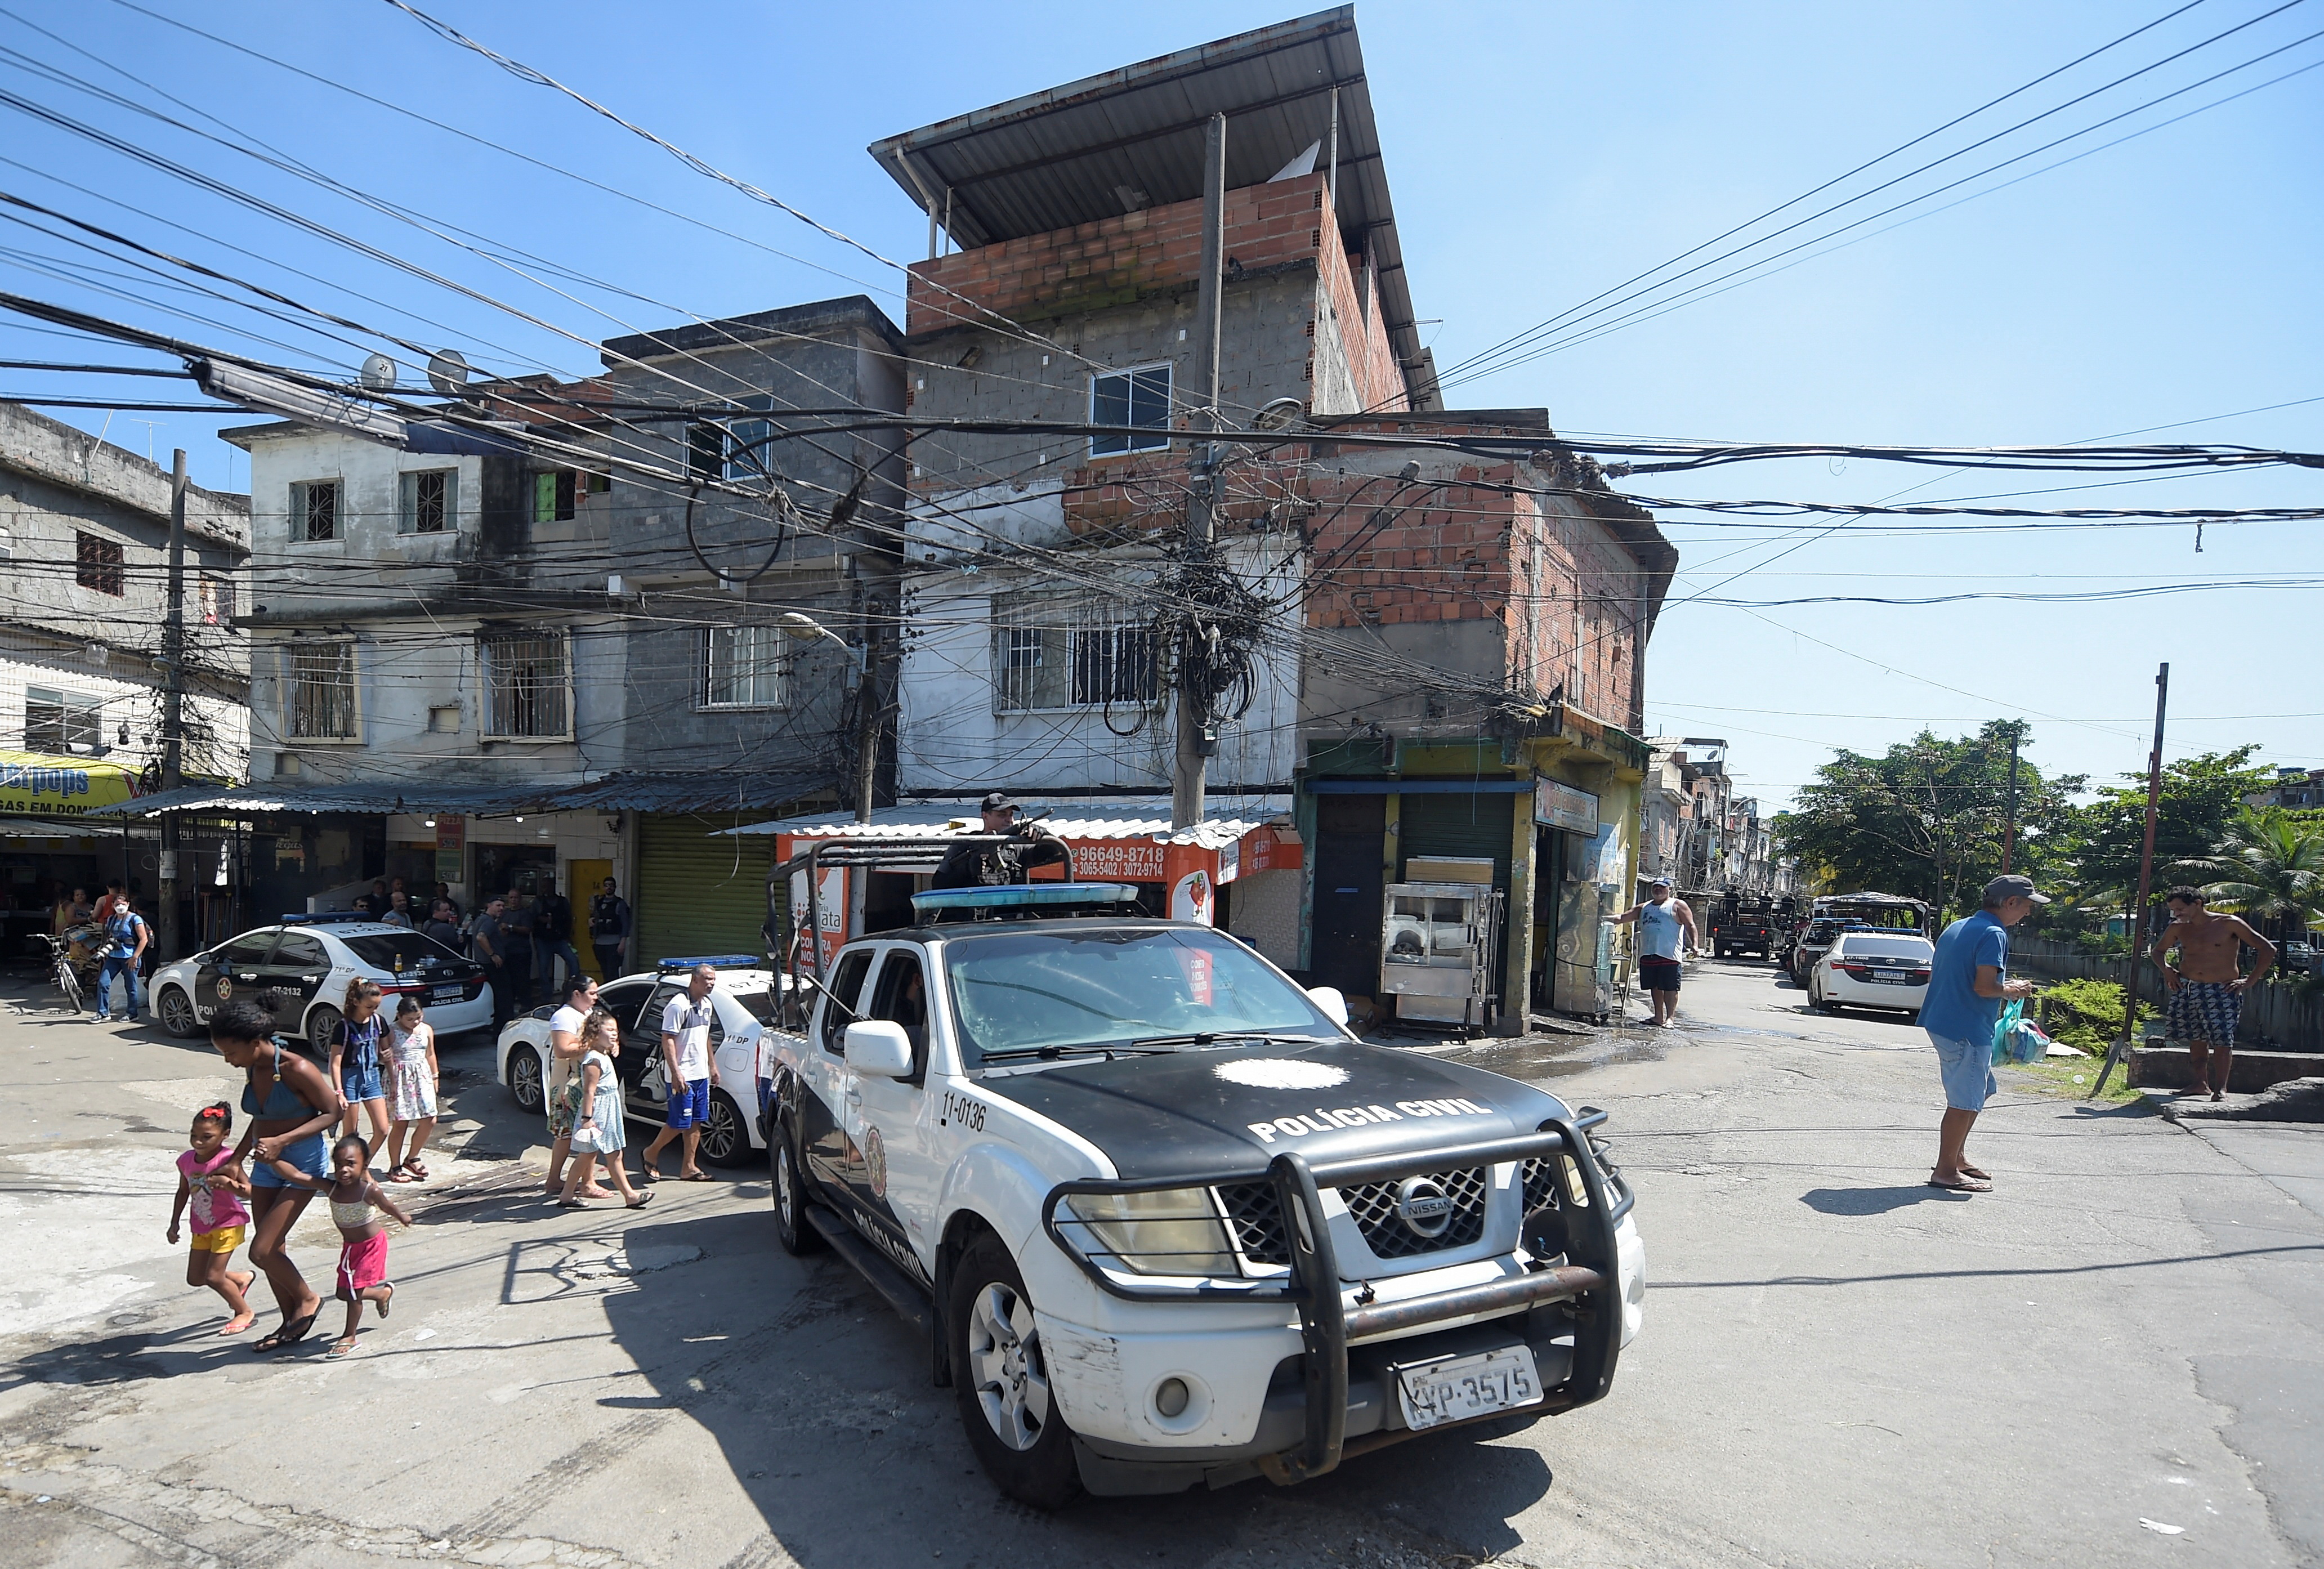  el gobernador de Río, Claudio Castro, pretende impulsar “un gran proceso de transformación” de las favelas del estado de Río. (REUTERS/Alexandre Loureiro)